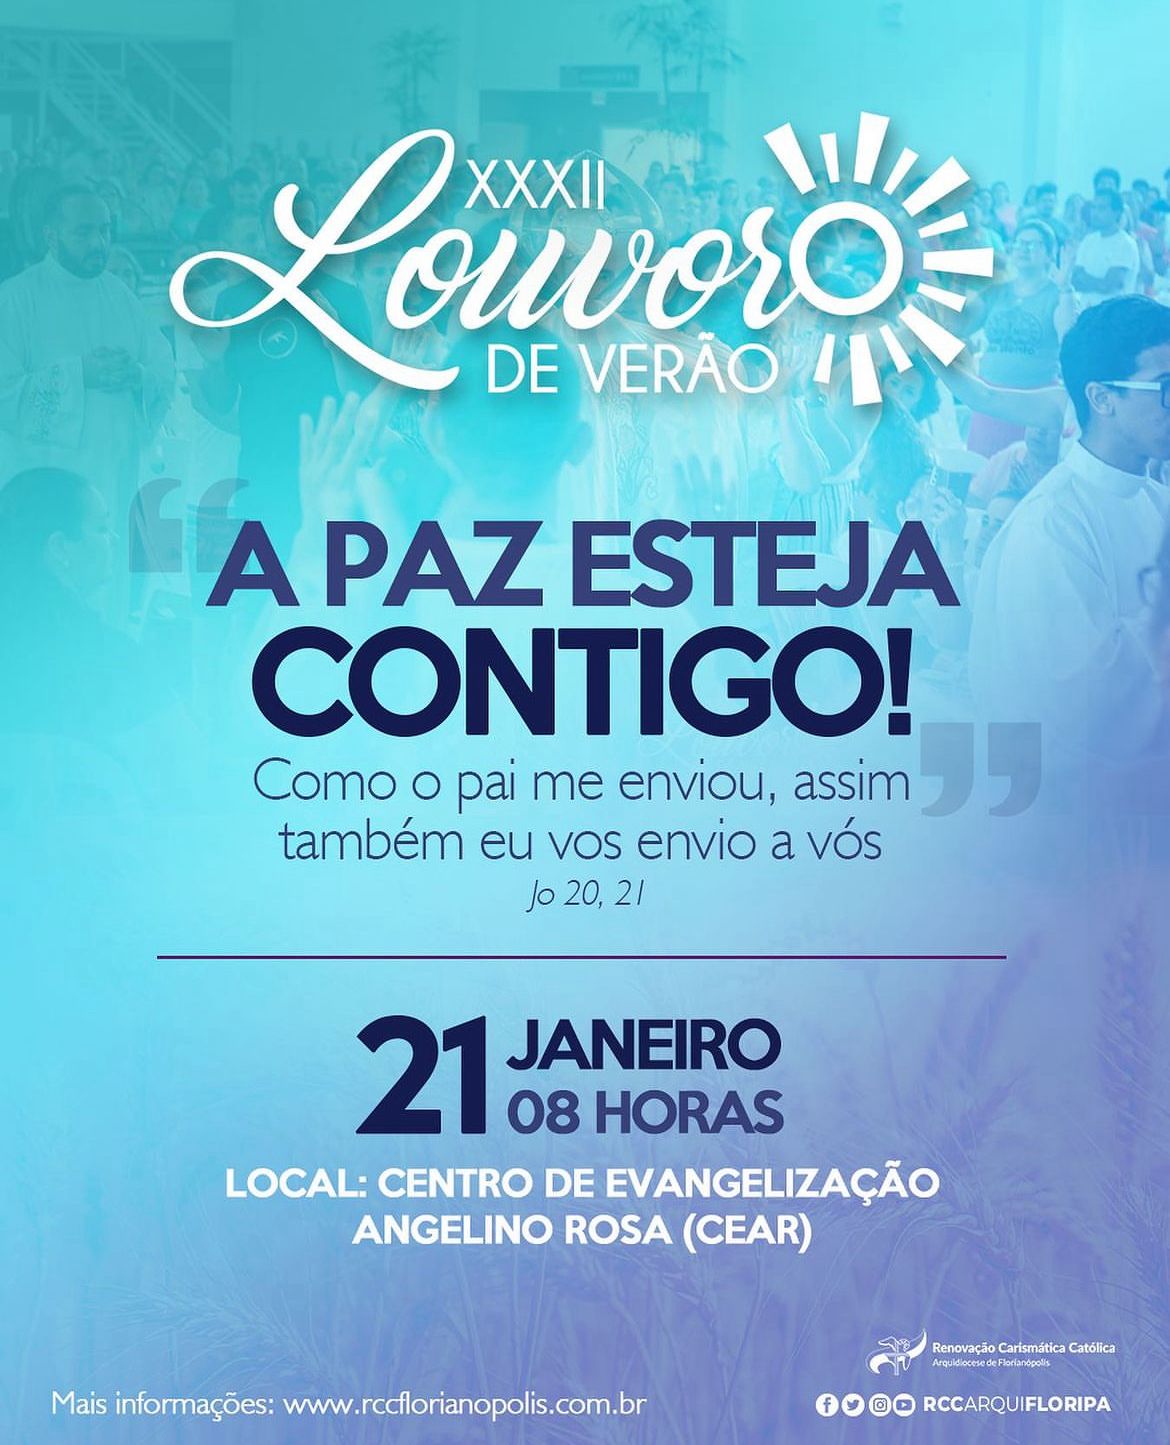 Renovação Carismática Católica de Florianópolis realiza 32ª edição do Louvor de Verão